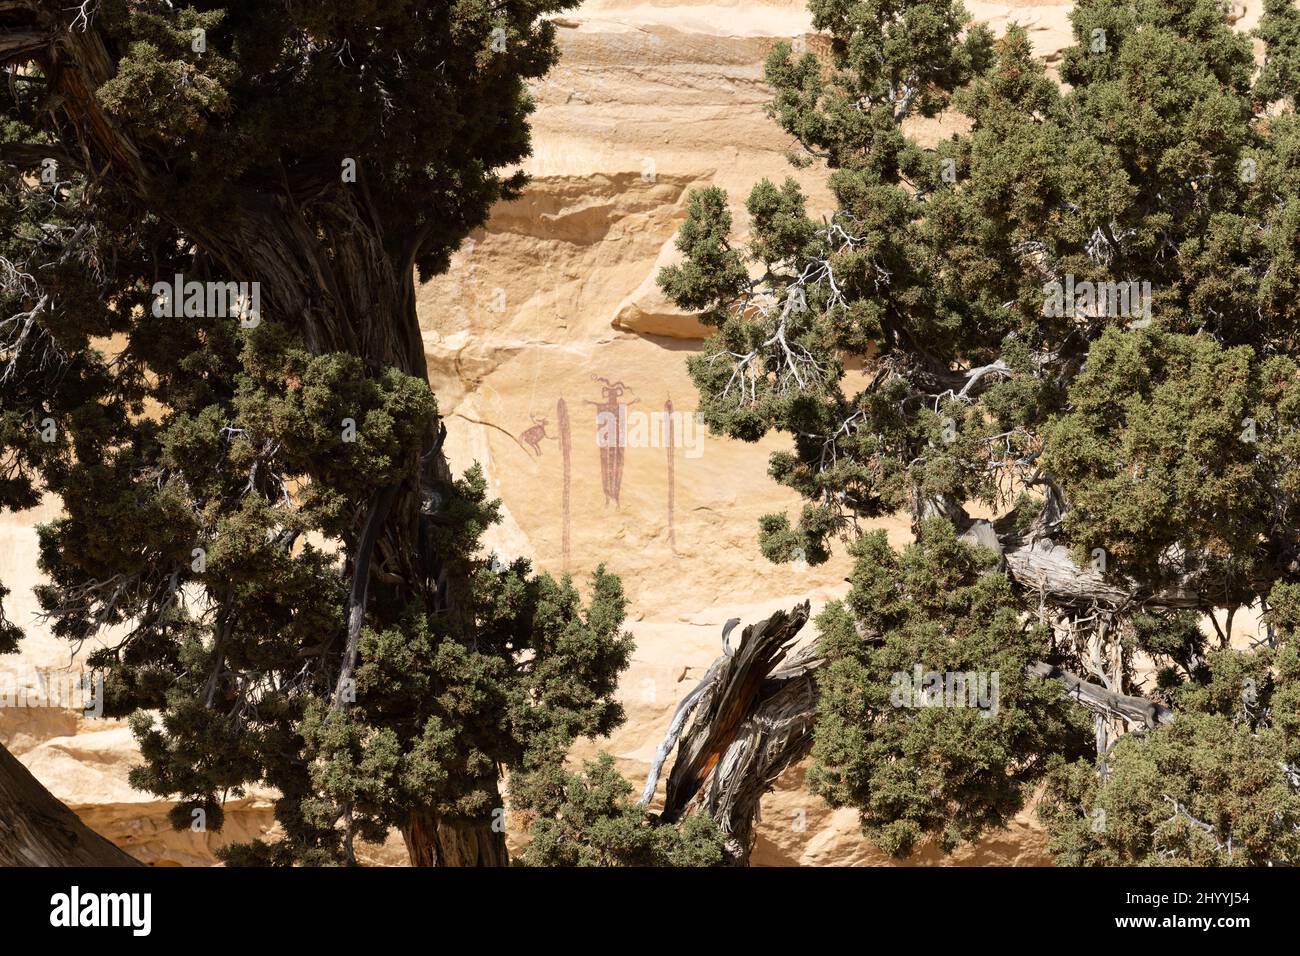 Ce panneau d'art rupestre de style Barrier Canyon se trouve dans la région de San Rafael Swell dans l'Utah, connue sous le nom de Head of Sinbad. Ces pictogrammes étaient pai Banque D'Images